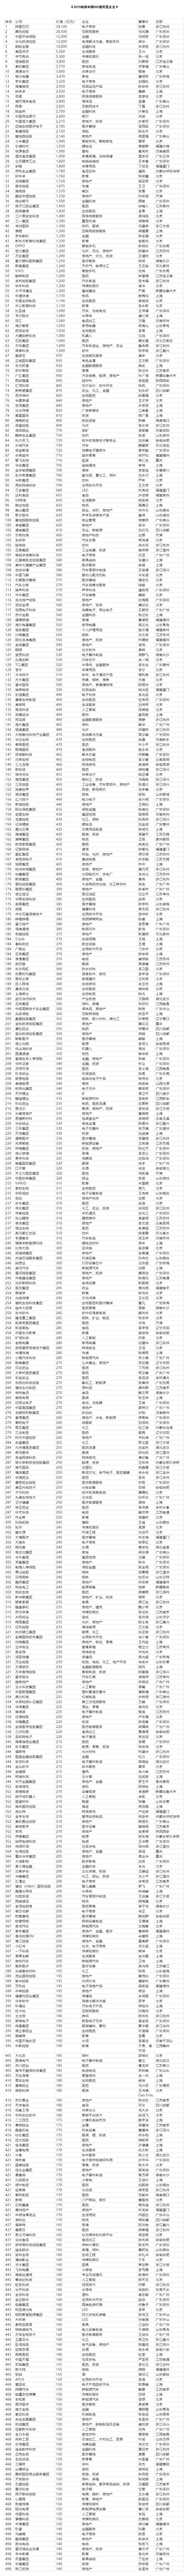 胡润发布2019中国民企500强排名：阿里、腾讯前二 华为第四